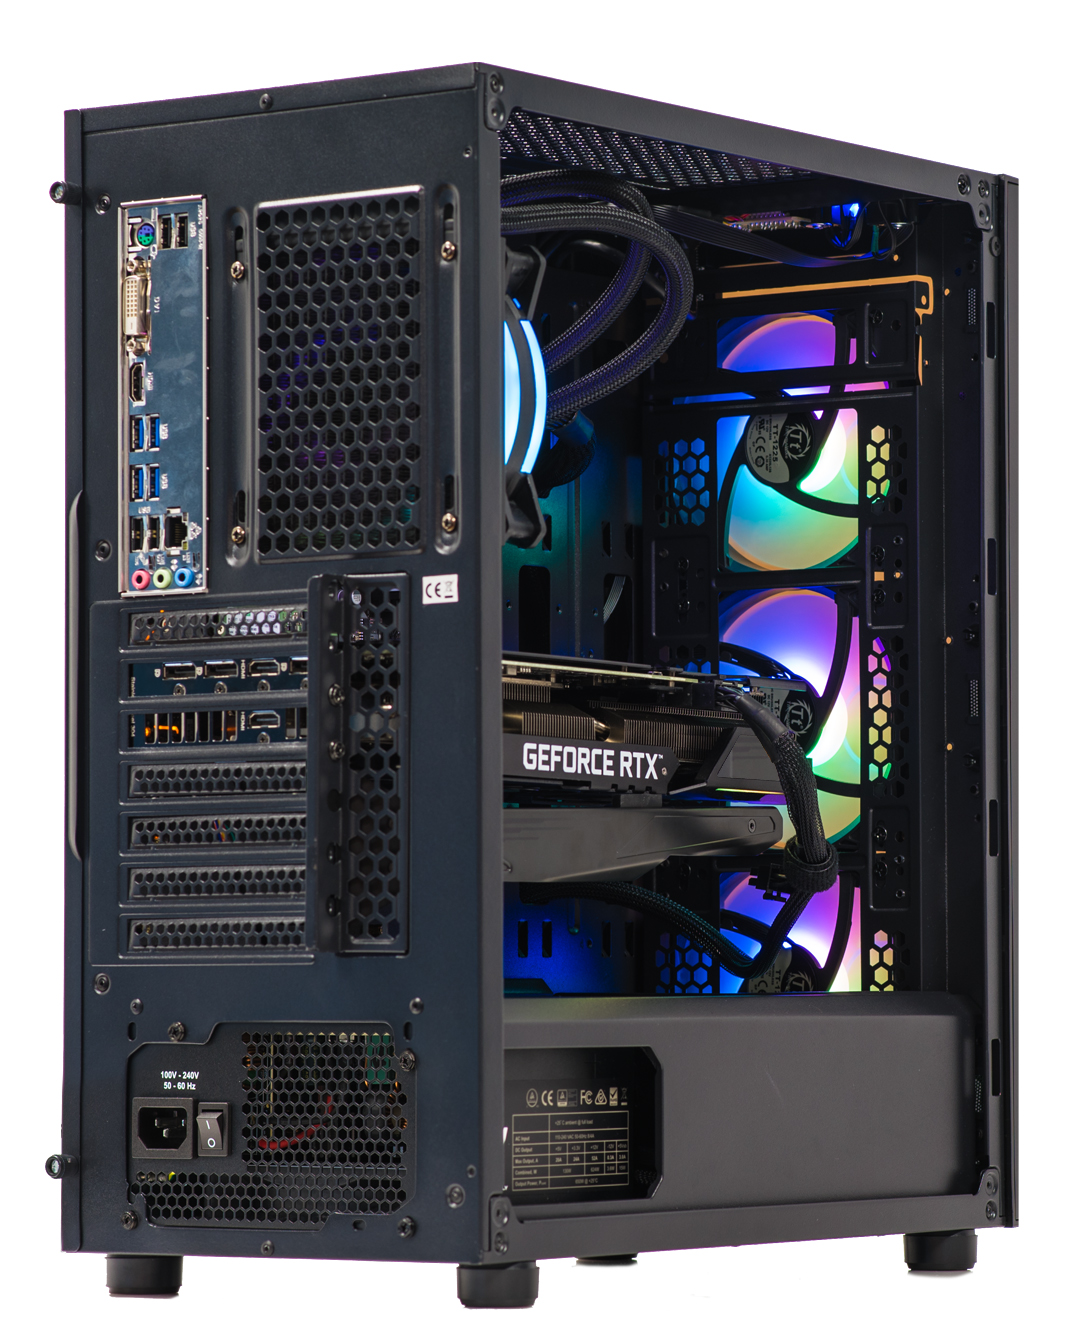 Velztorm Archux Desktop PC (AMD Ryzen 7 - 3700X, 16GB DDR4, 2TB m.2 SATA SSD + 1TB HDD (3.5), Win 10 Pro)